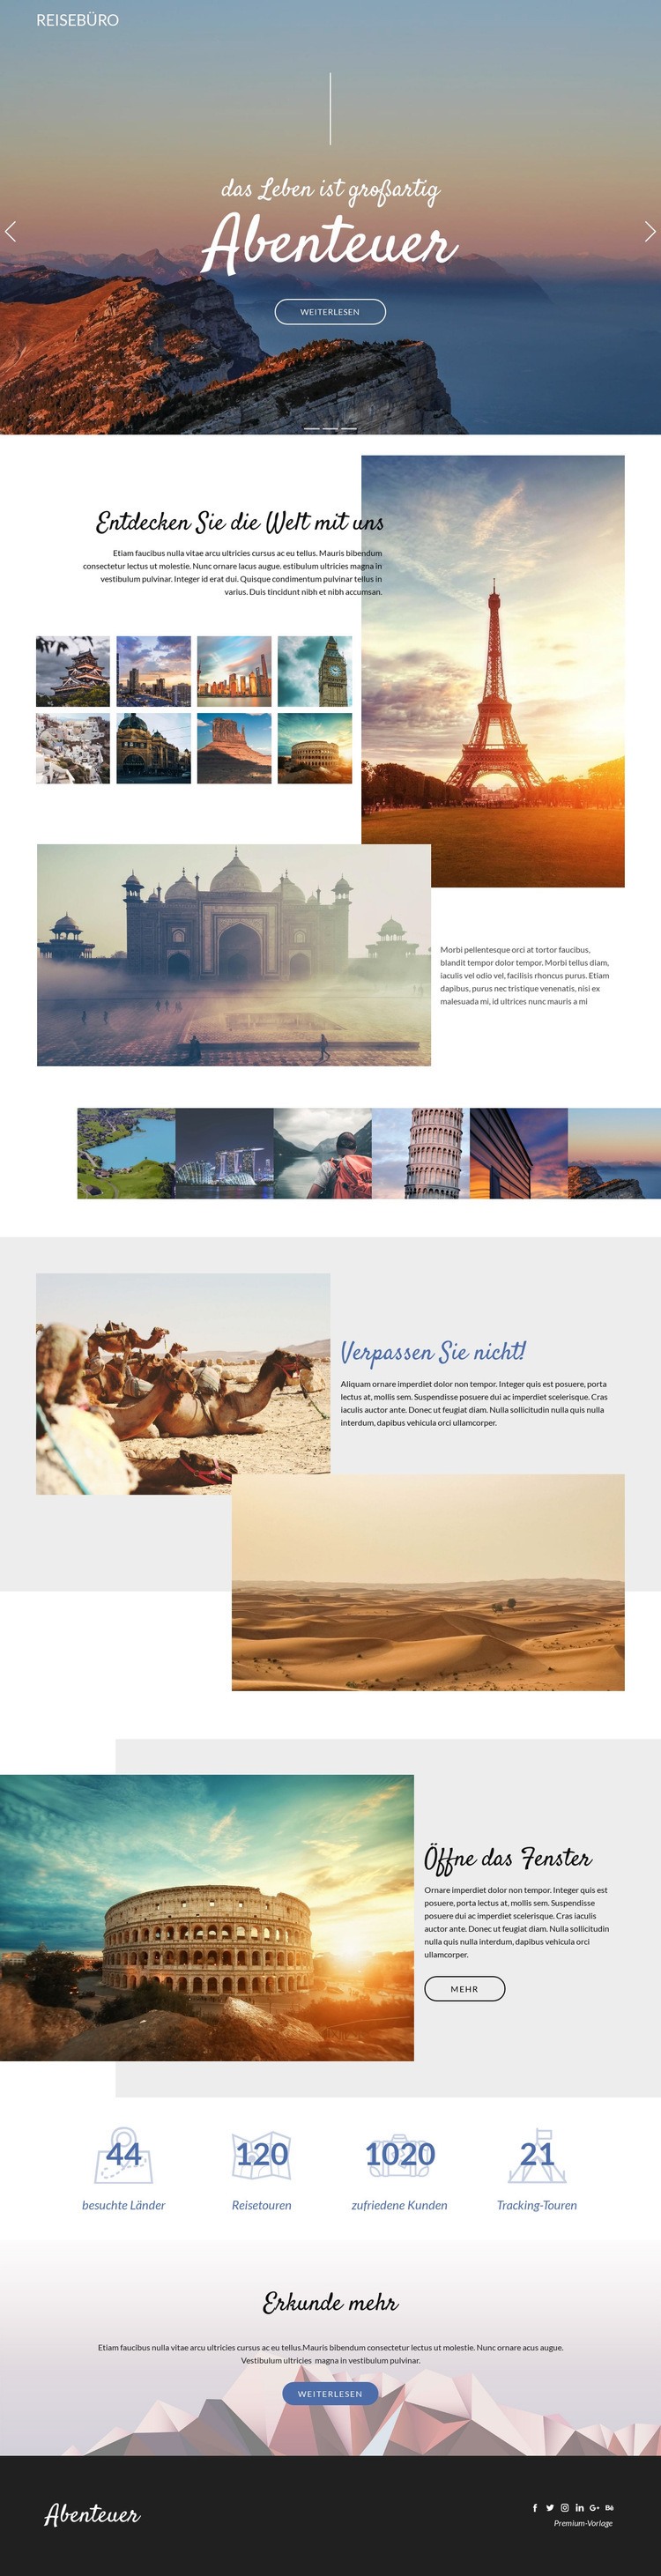 Abenteuer und Reisen Website design